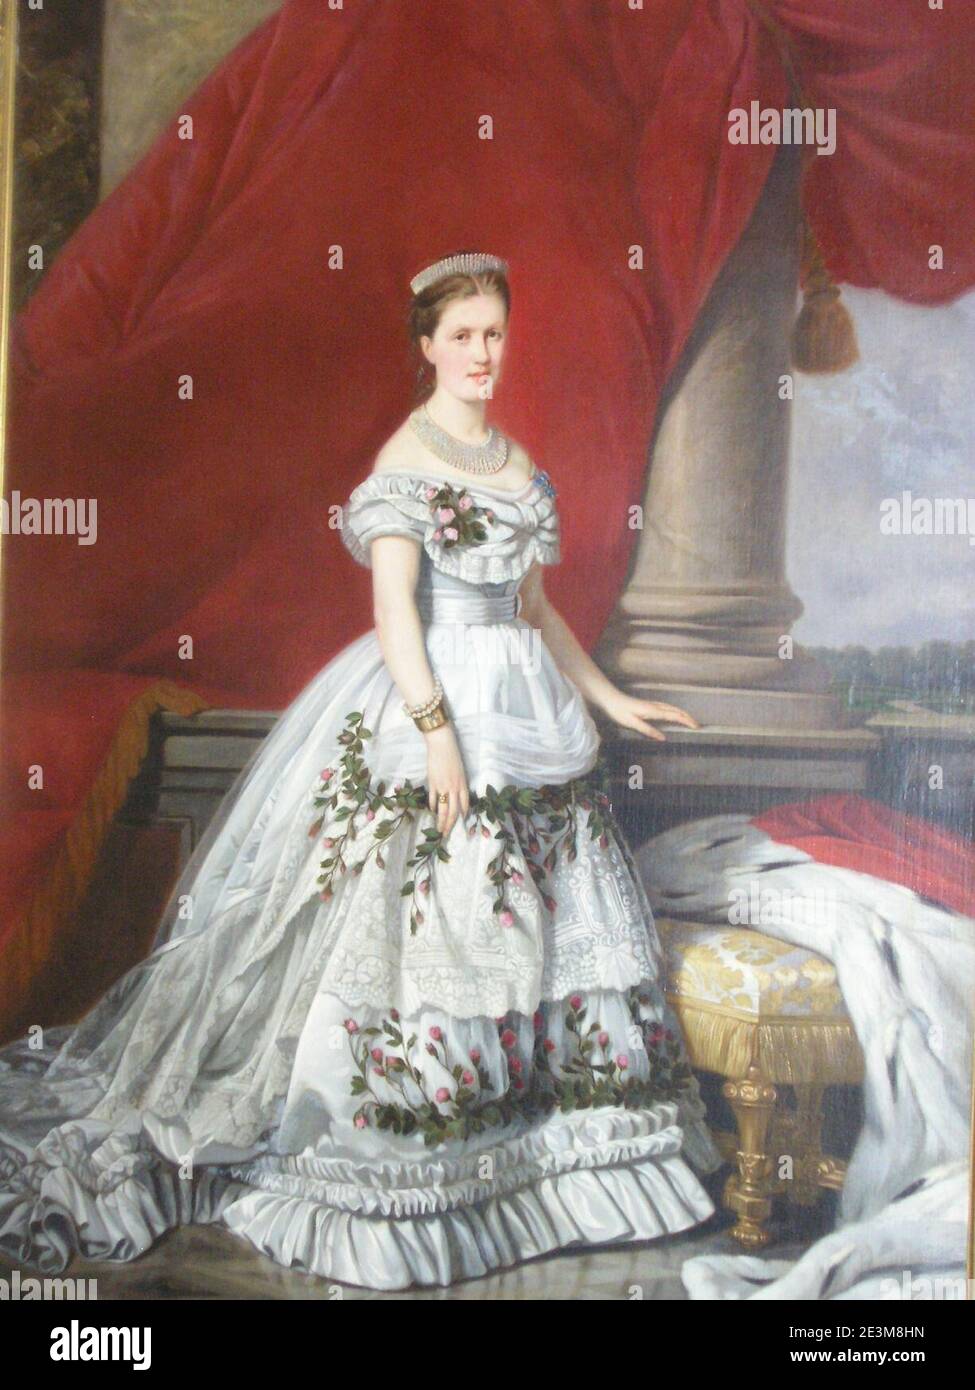 Marie, Prinzessin von Schwarzburg-Rudolstadt in Hochzeitskleid. Stock Photo